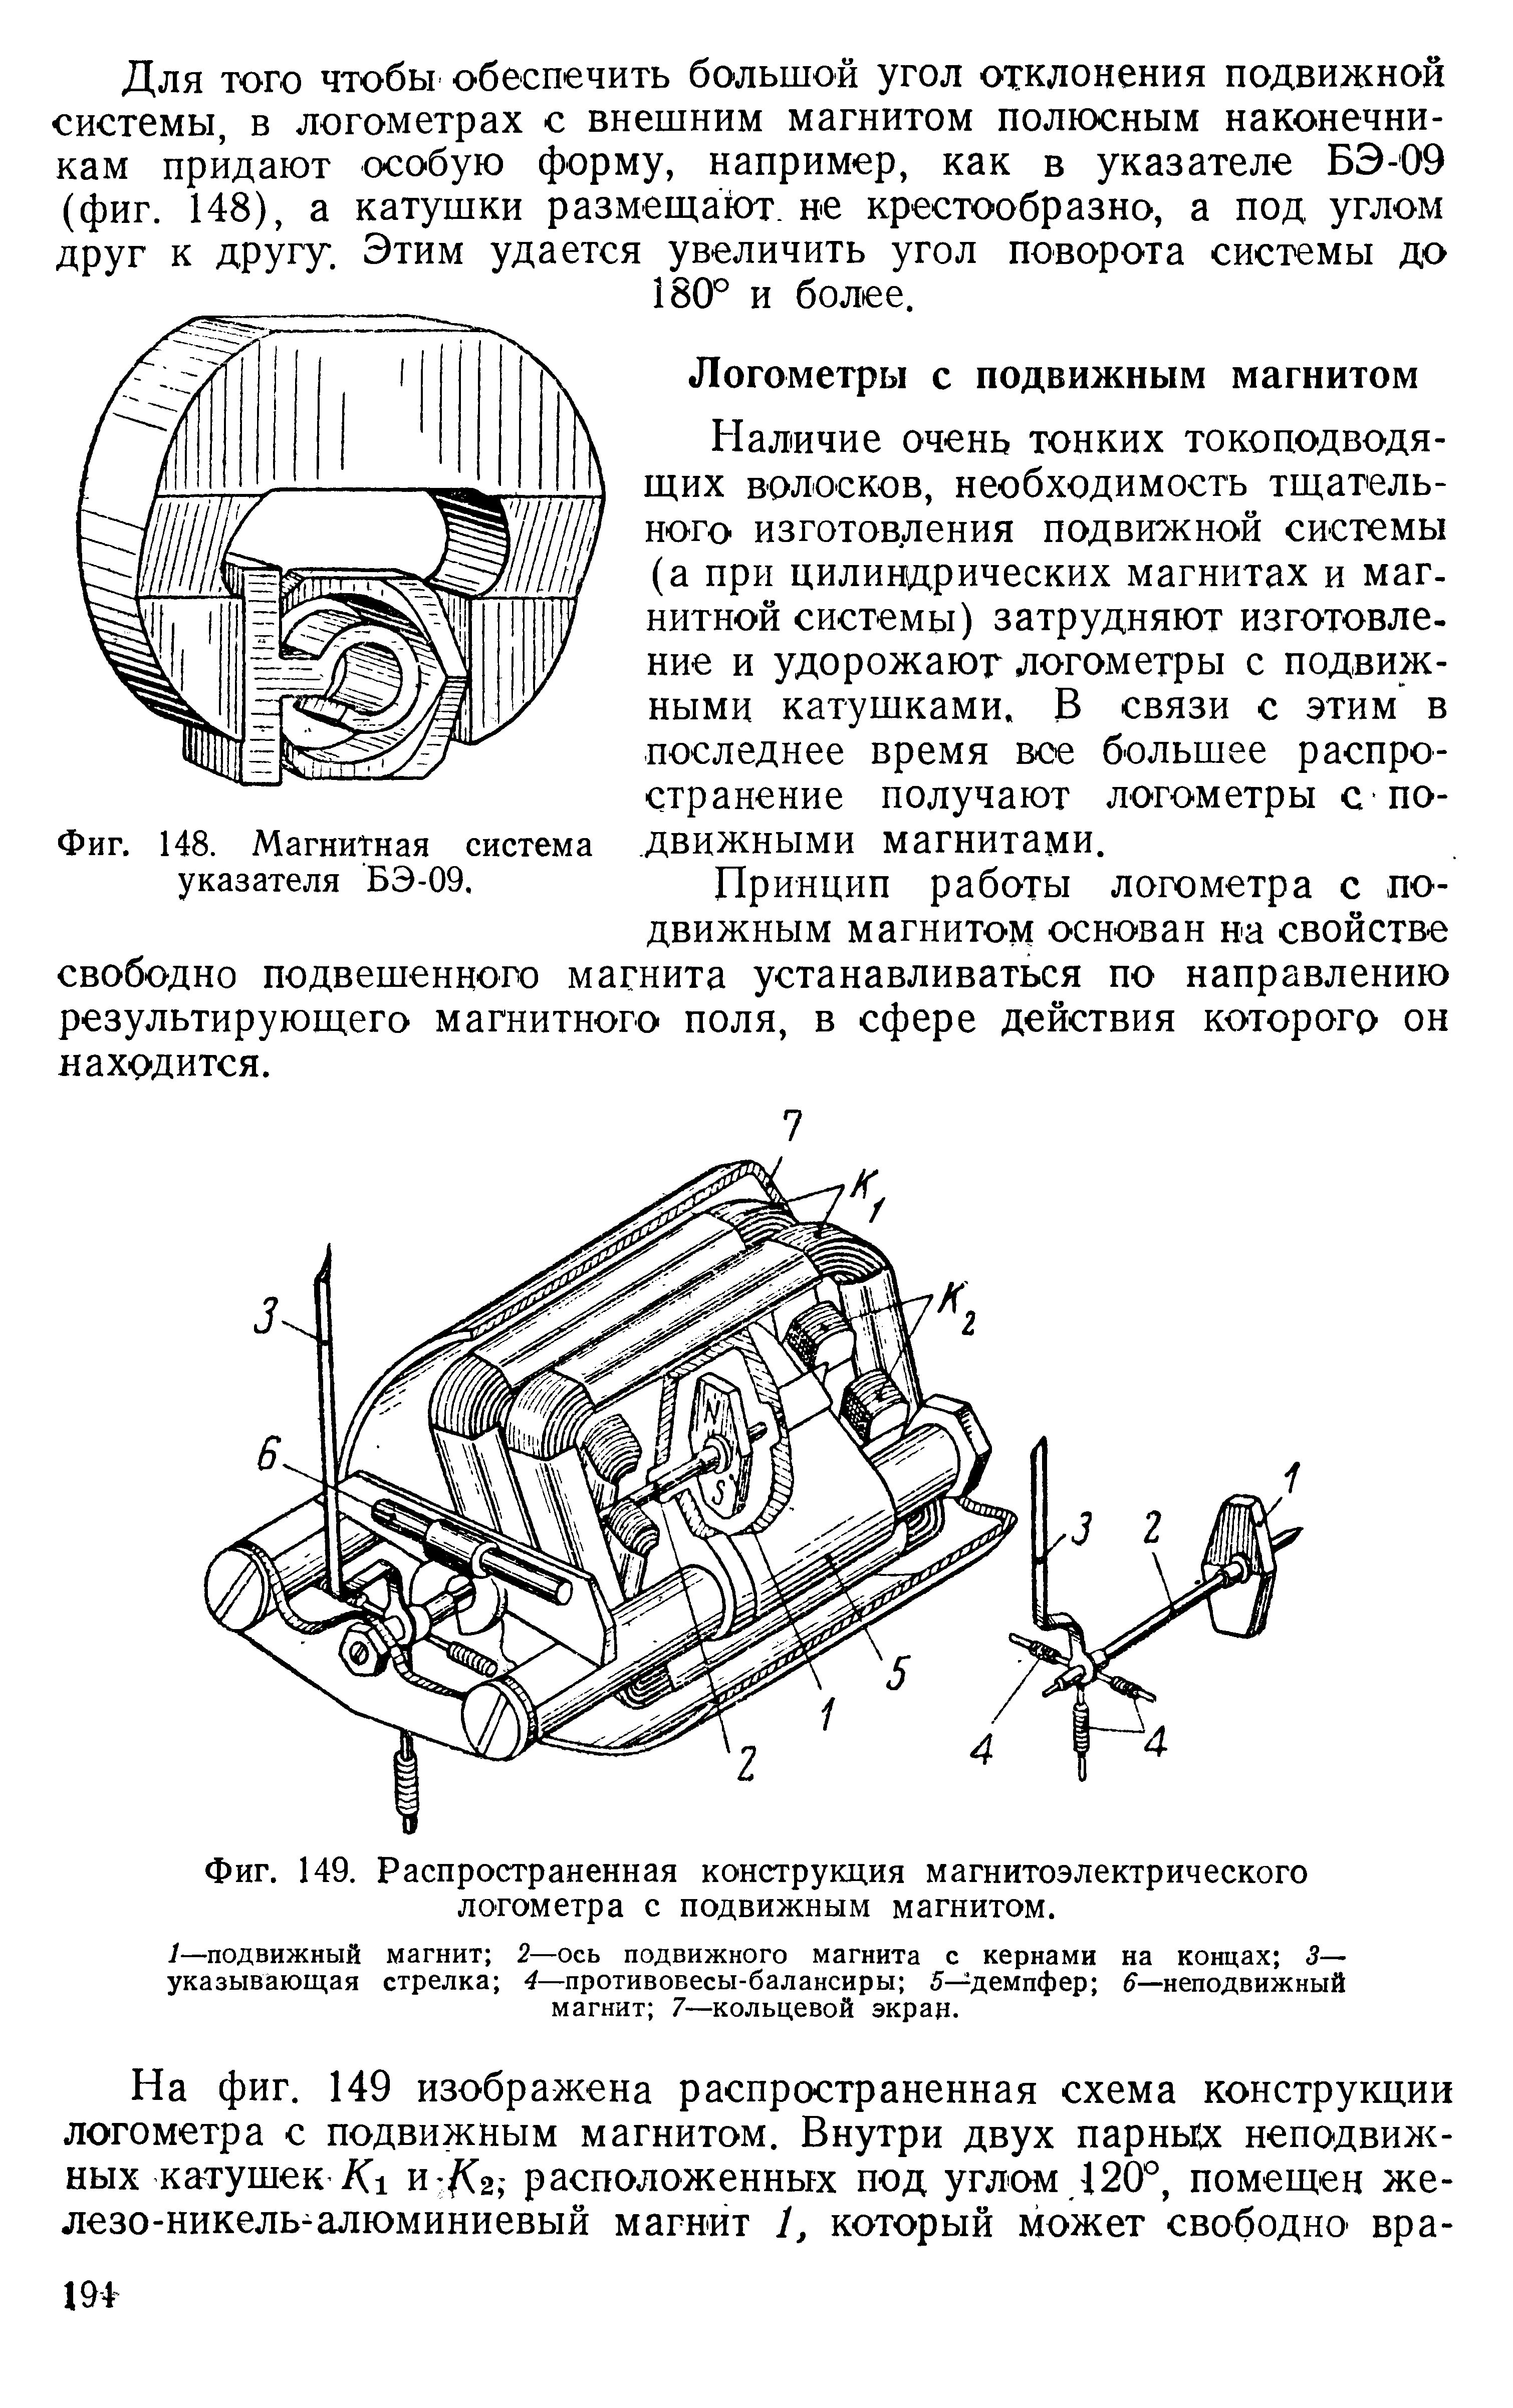 Фиг. 149. Распространенная конструкция магнитоэлектрического логометра с подвижным магнитом.
